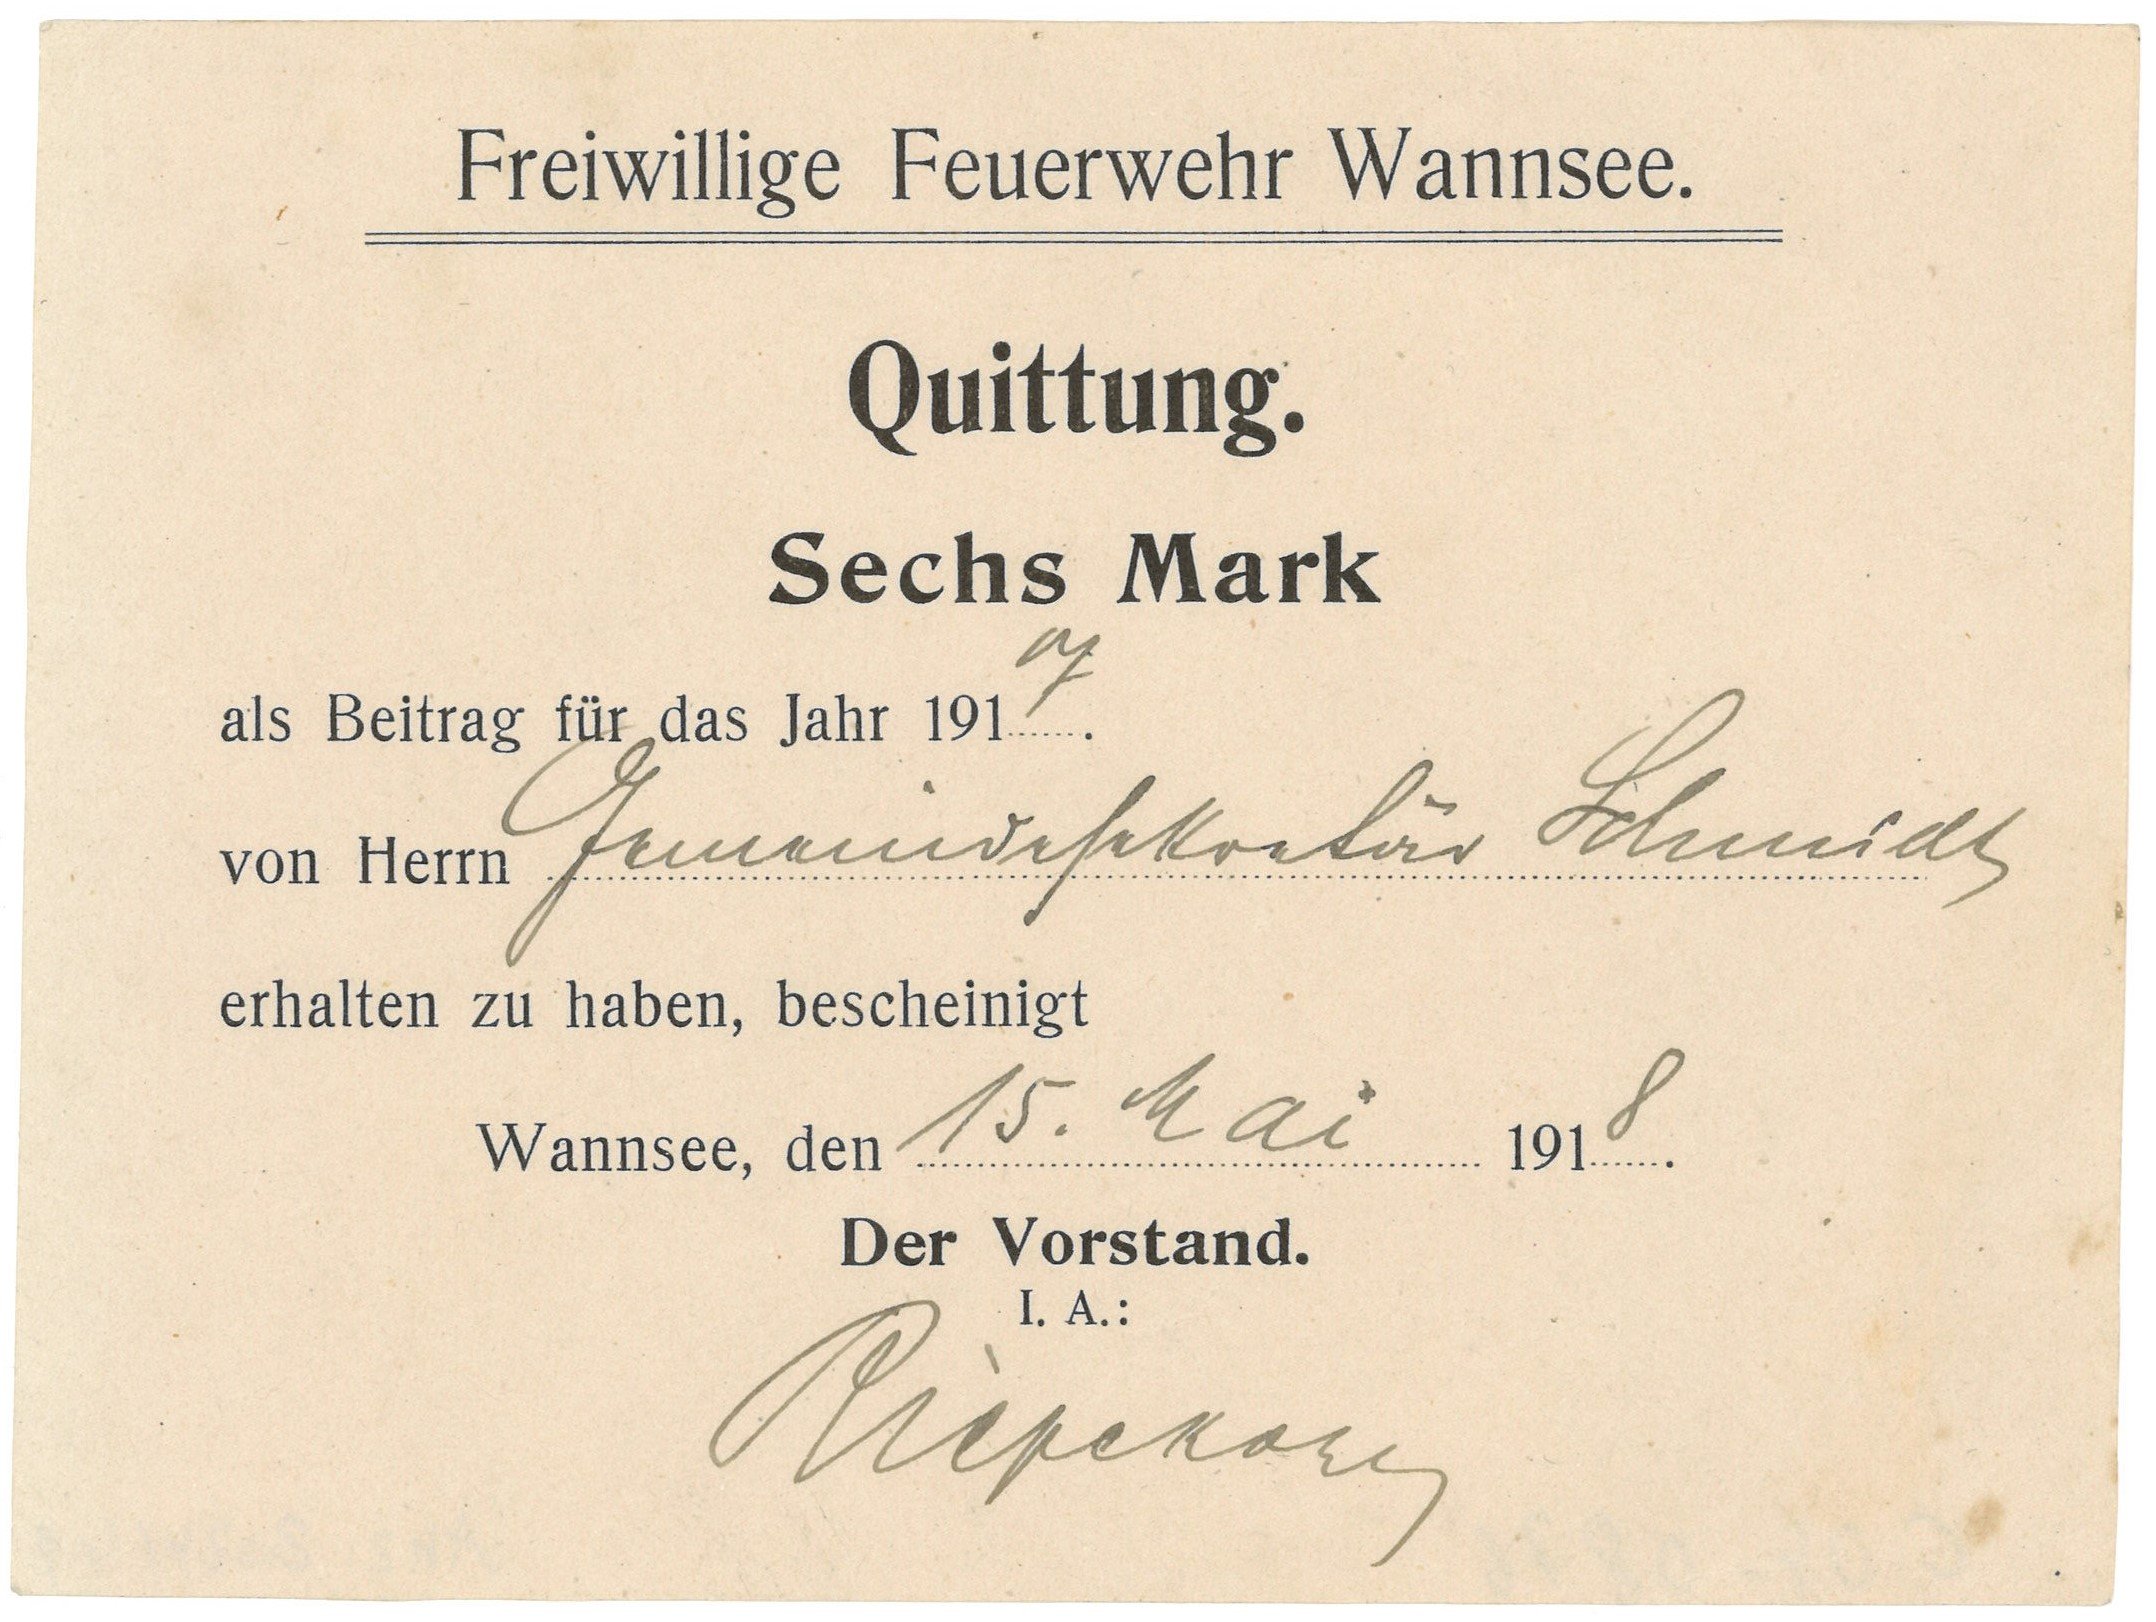 Beitragsquittung der Freiwilligen Feuerwehr Wannsee für Gemeindesekretär Schmidt (1918) (Landesgeschichtliche Vereinigung für die Mark Brandenburg e.V. CC BY)